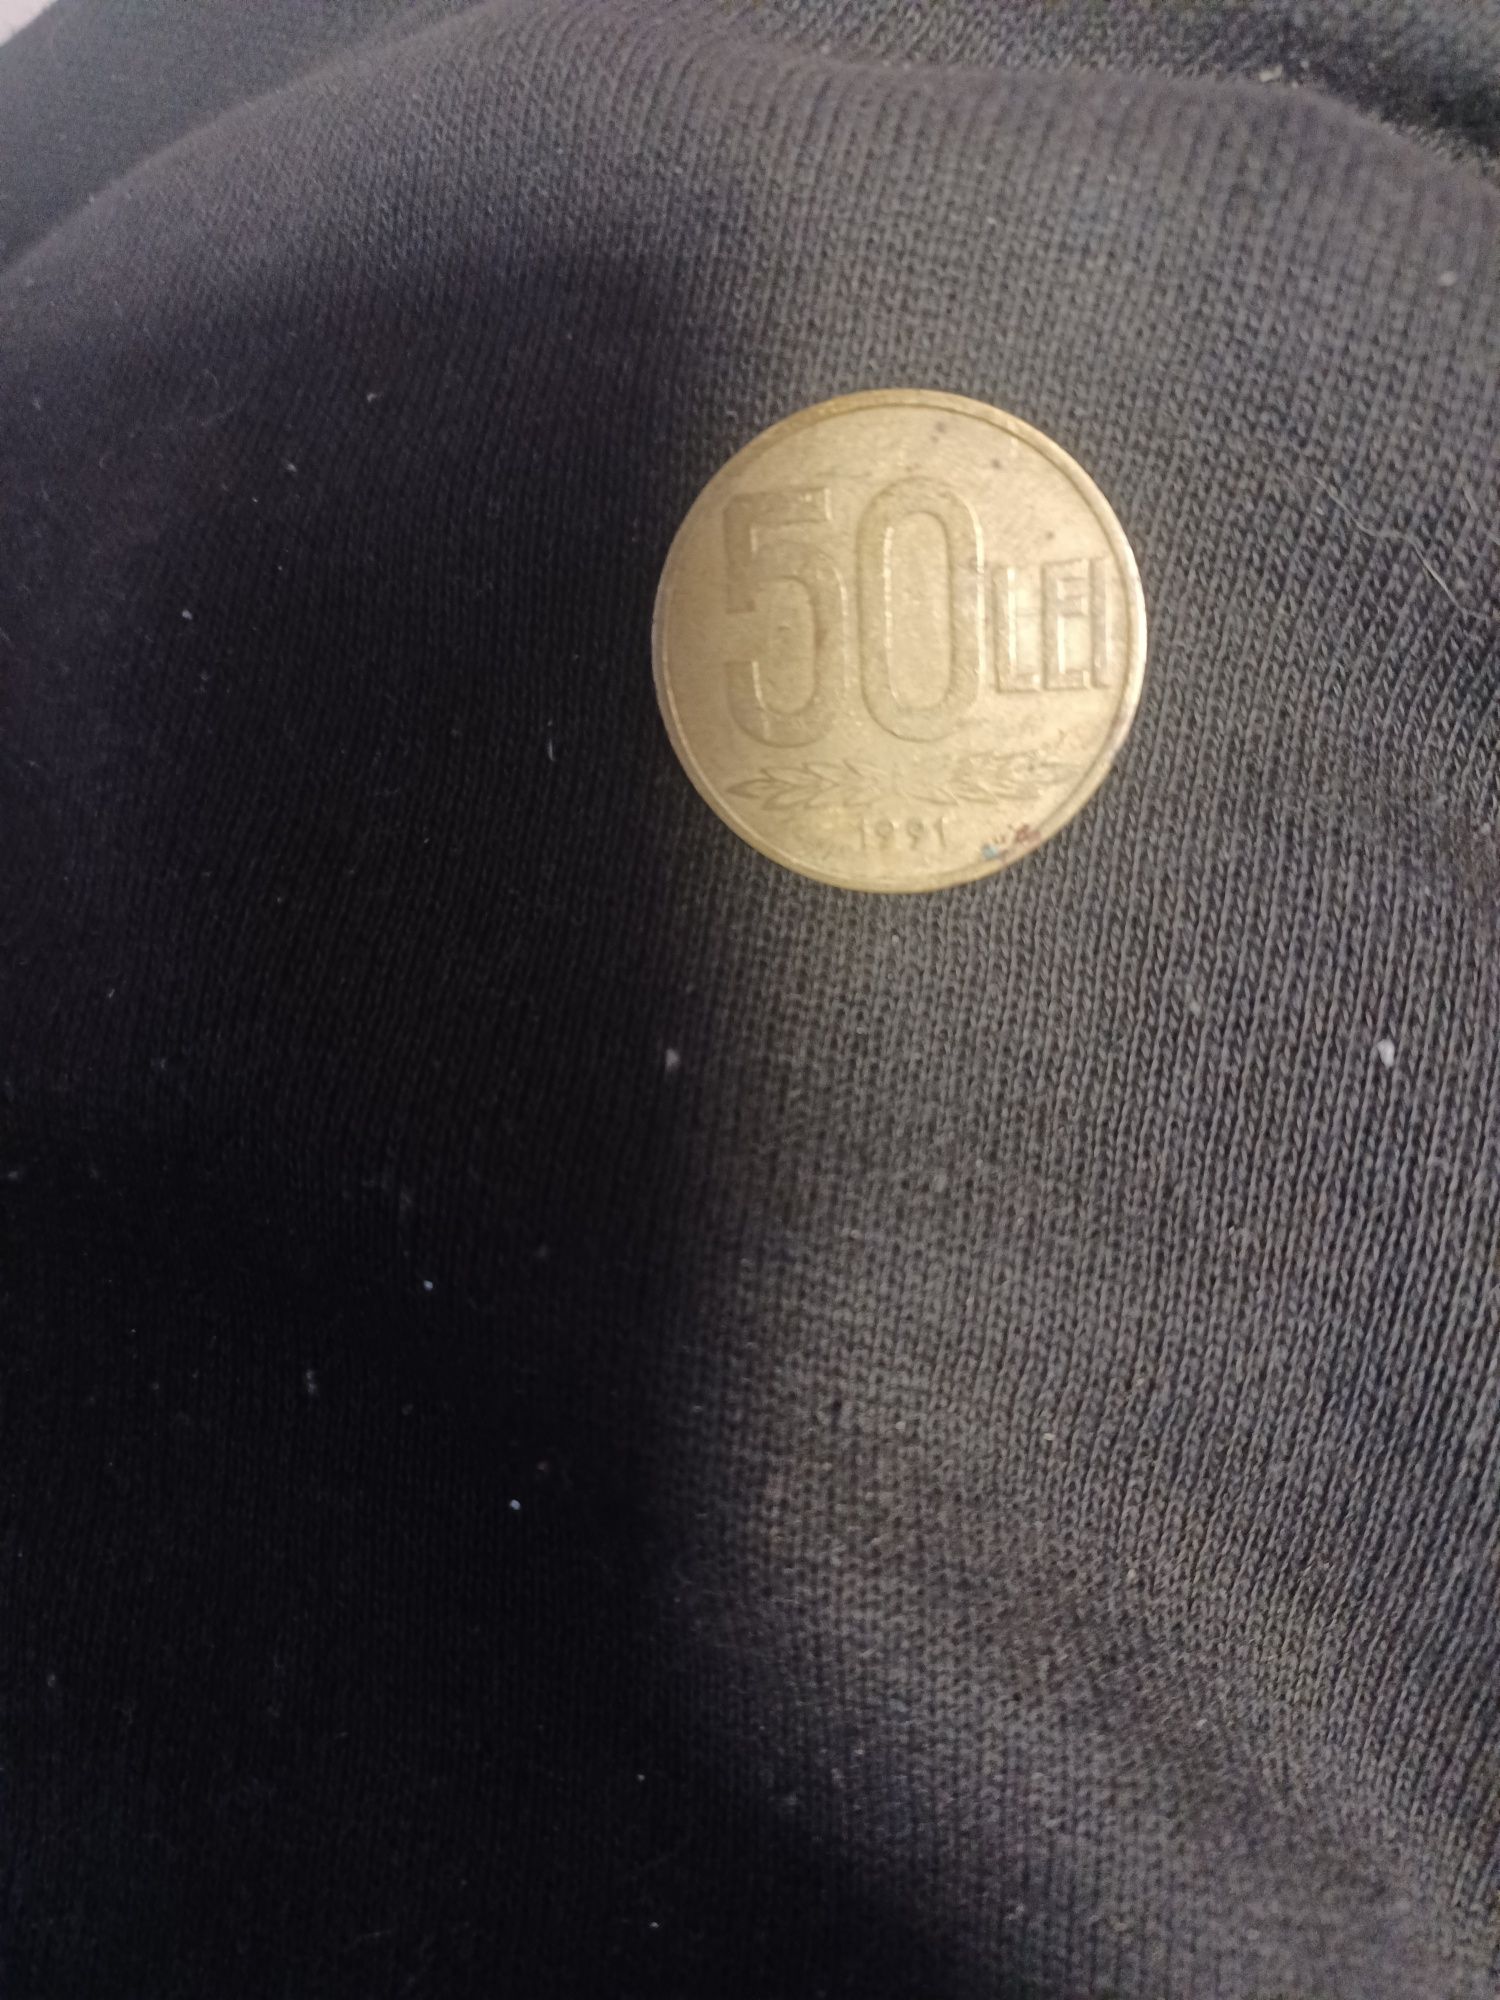 Moneda 50 lei vechi